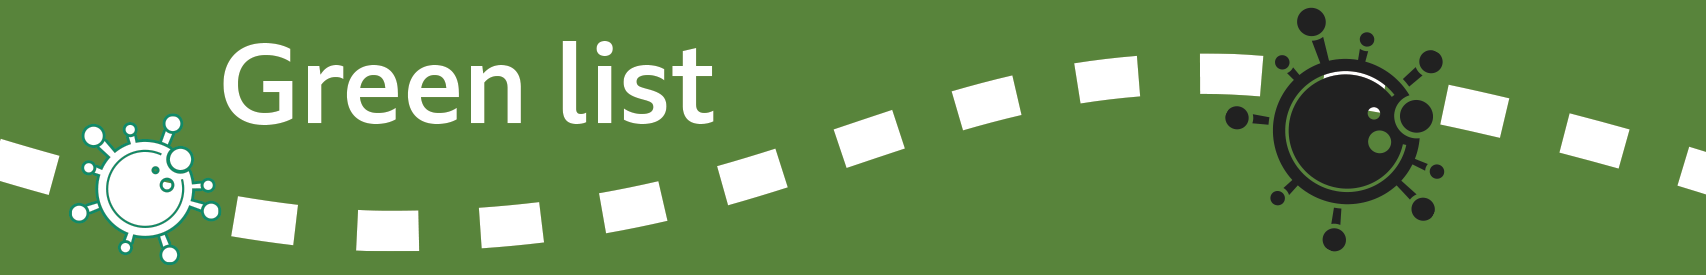 Green list banner (v2)